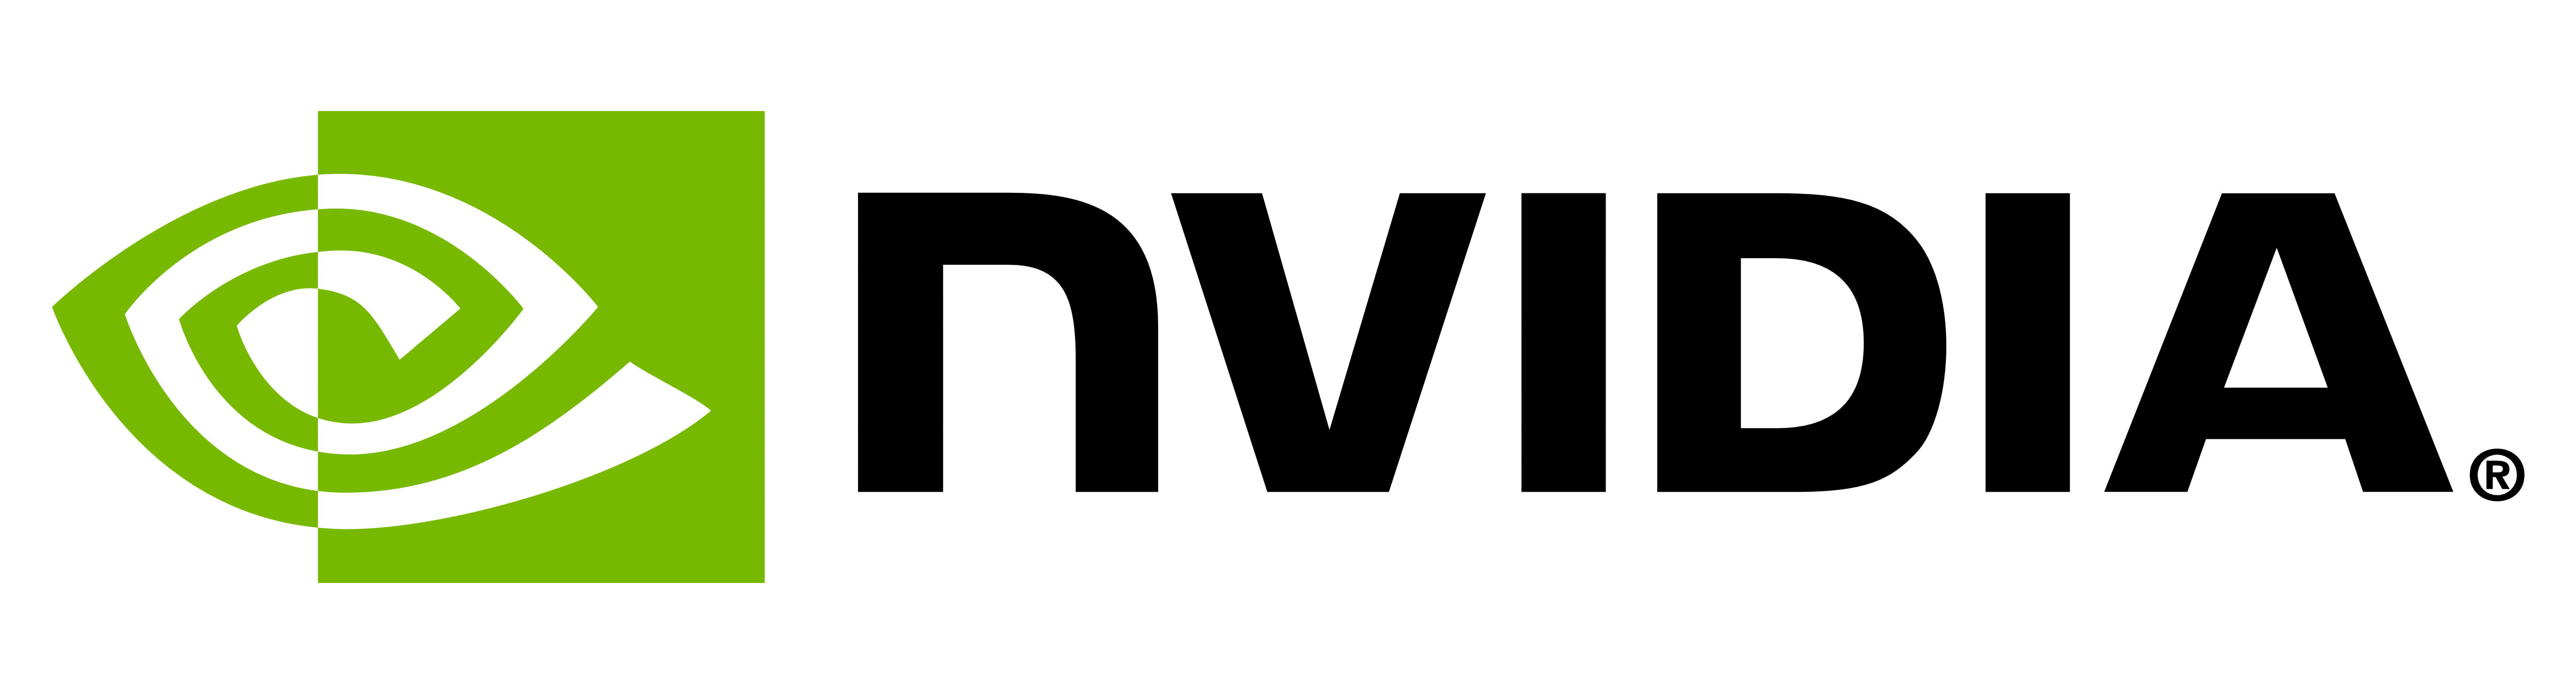 Significato del logo e del simbolo NVIDIA | storia ed evoluzione